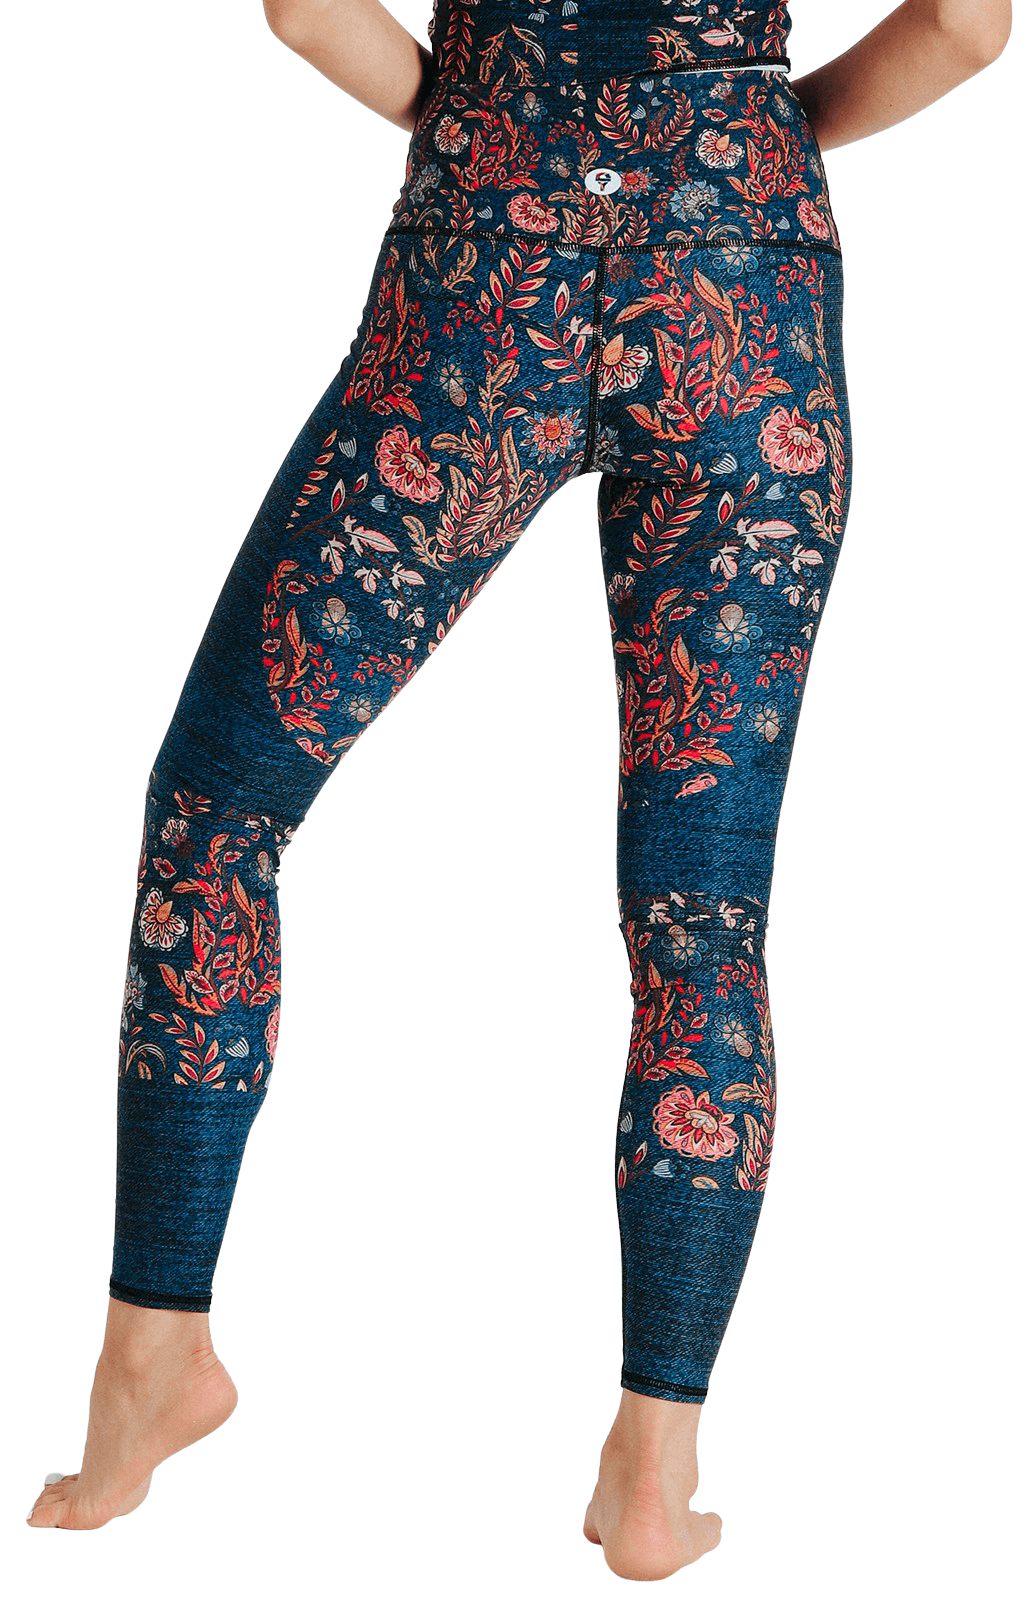 Women's Leggings Faux Denim Floral Printed Yoga Pants Casual